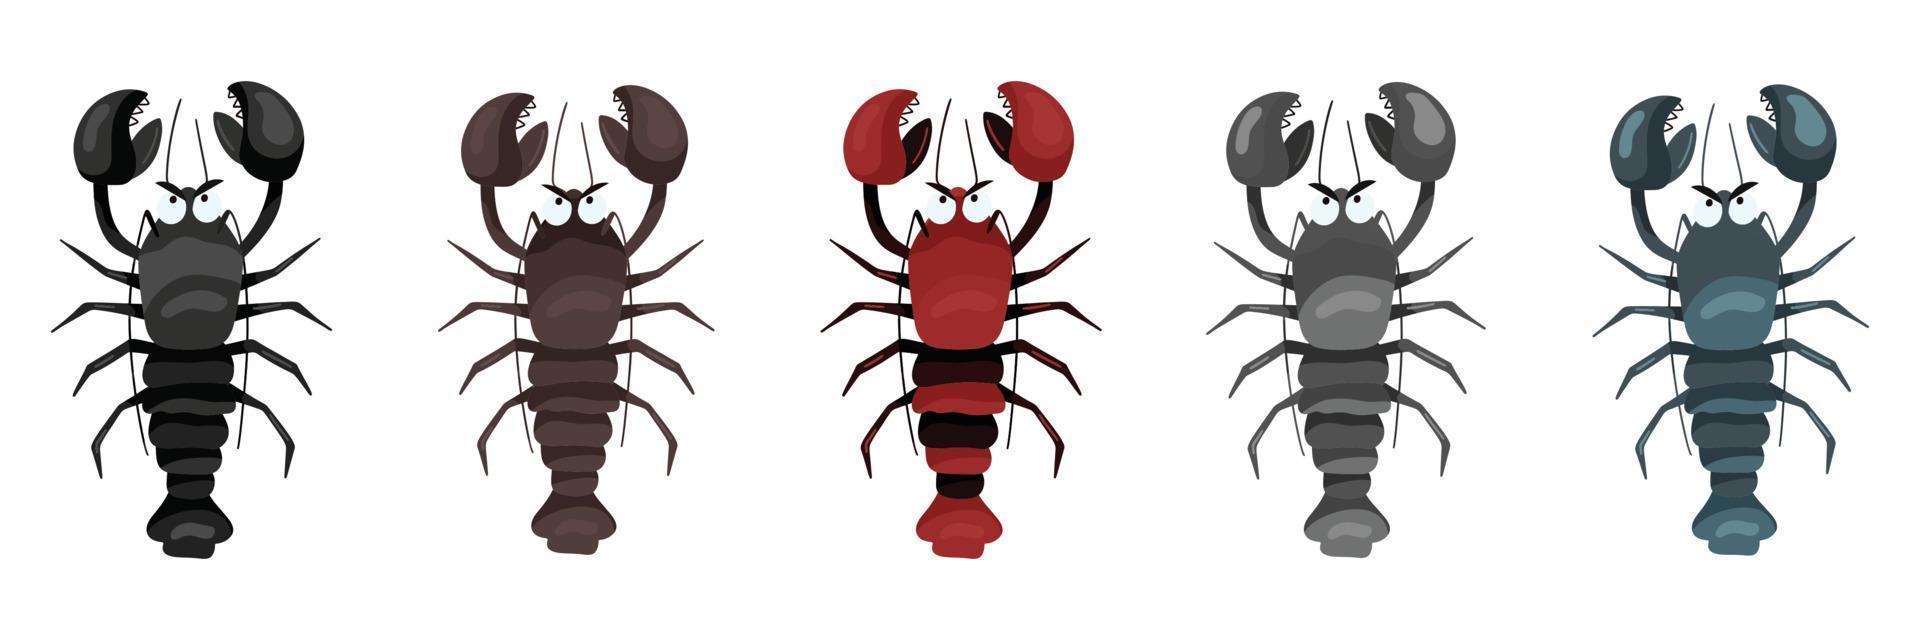 conjunto de dibujos de cangrejos de mar en diferentes colores. ilustración vectorial horizontal en estilo de dibujos animados, aislada sobre fondo blanco. vector